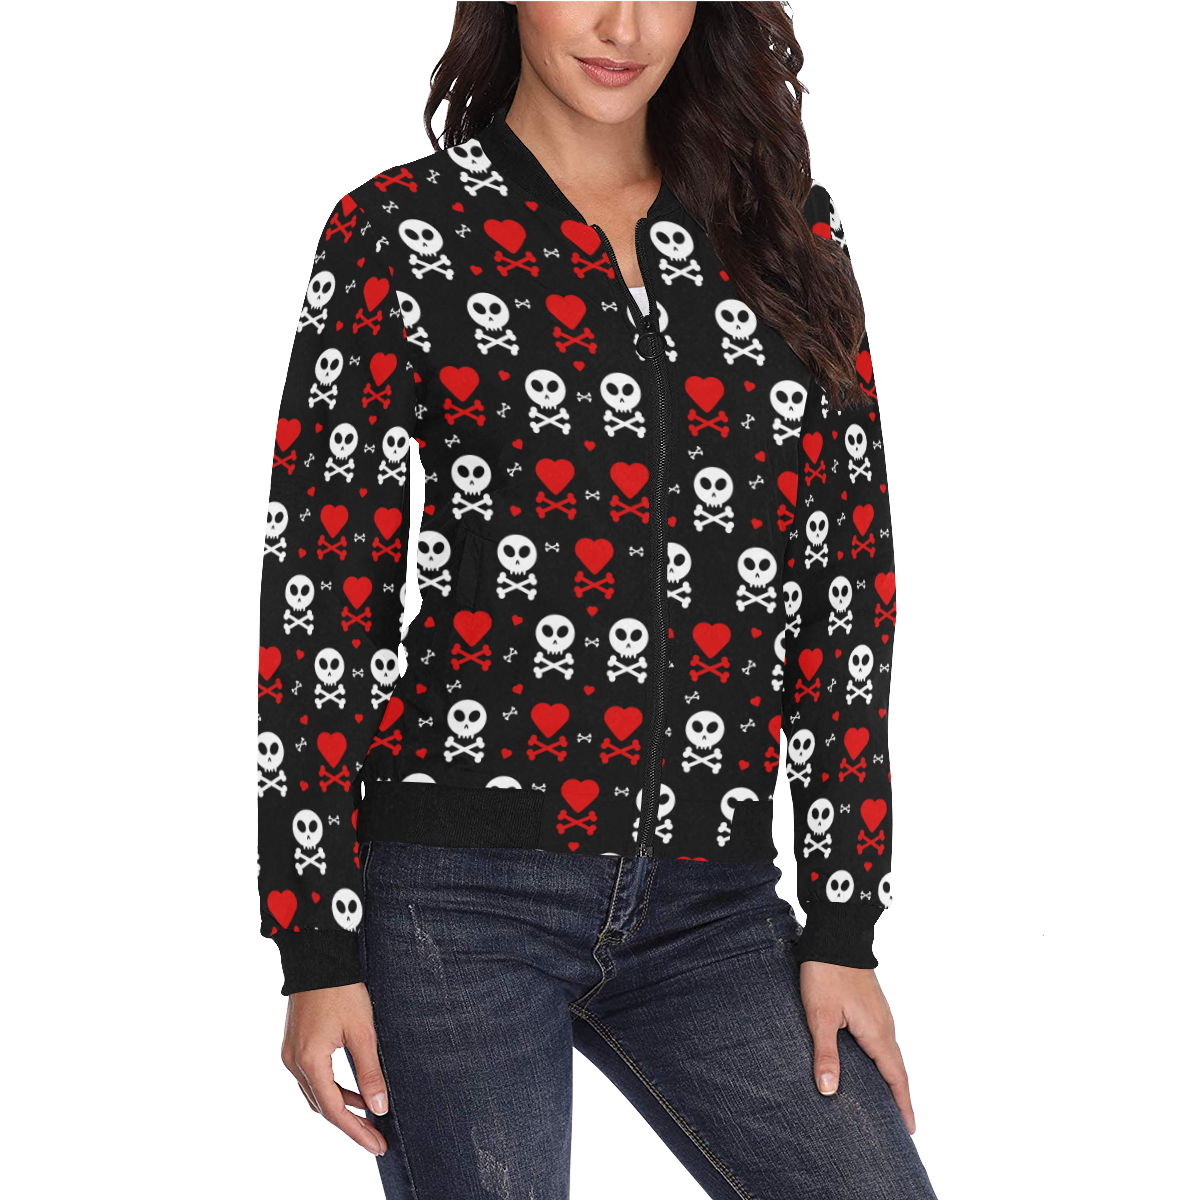 Skull and Crossbones All Over Print Bomber Jacket for Women (Model H36)